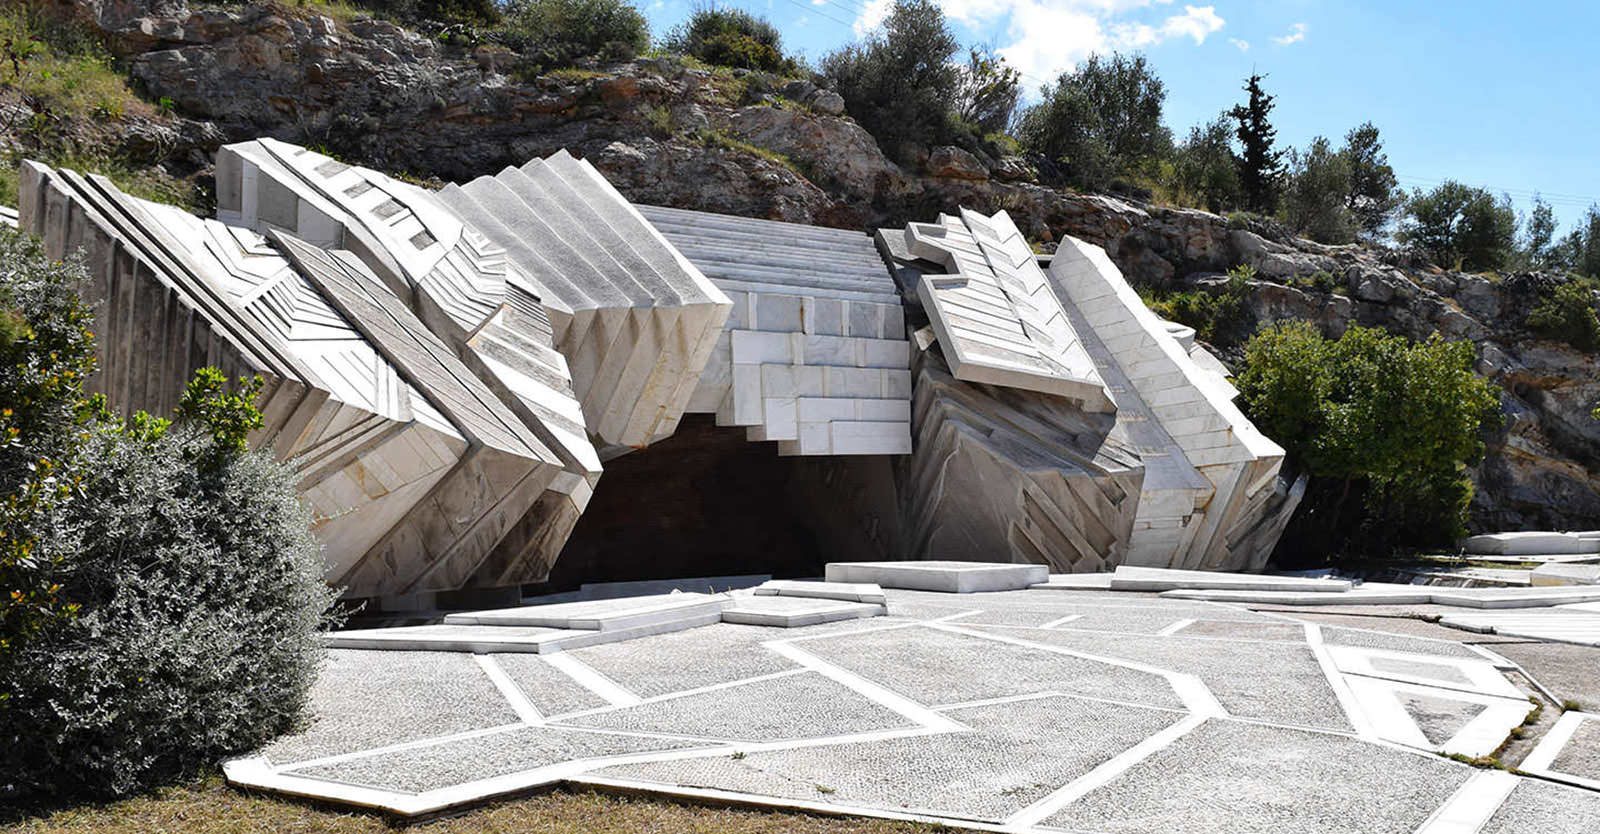 Archisearch Οι Αρχιτέκτονες Τοπίου μας Ξεναγούν - Μια Διαδρομή σε Διακεκριμένα Έργα Αρχιτεκτονικής Τοπίου της Ελλάδας